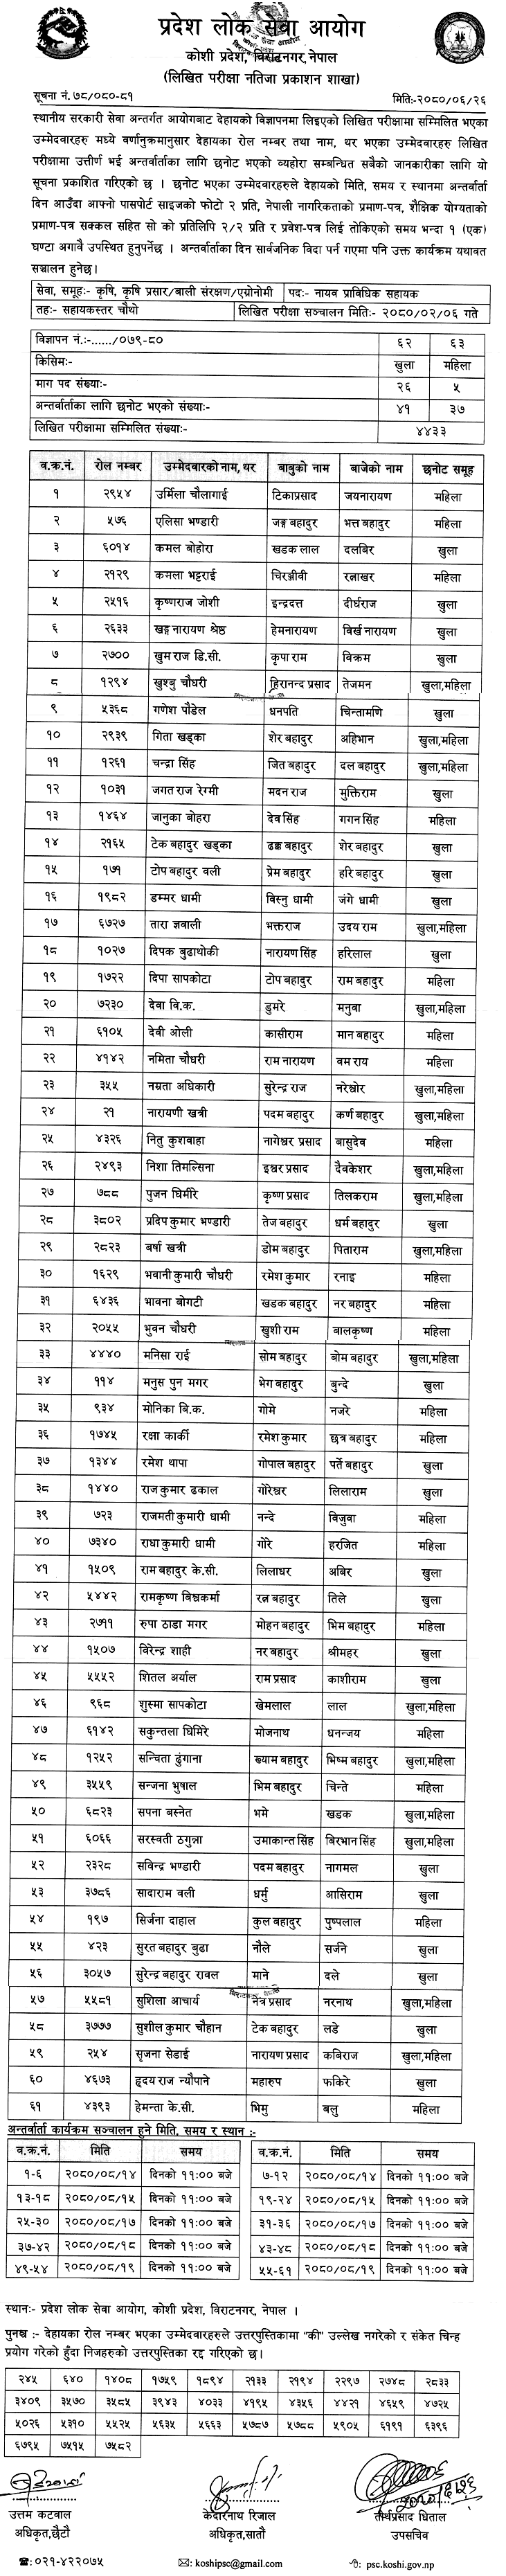 Koshi Pradesh Lok Sewa Aayog Written Exam Result of JTA 2080